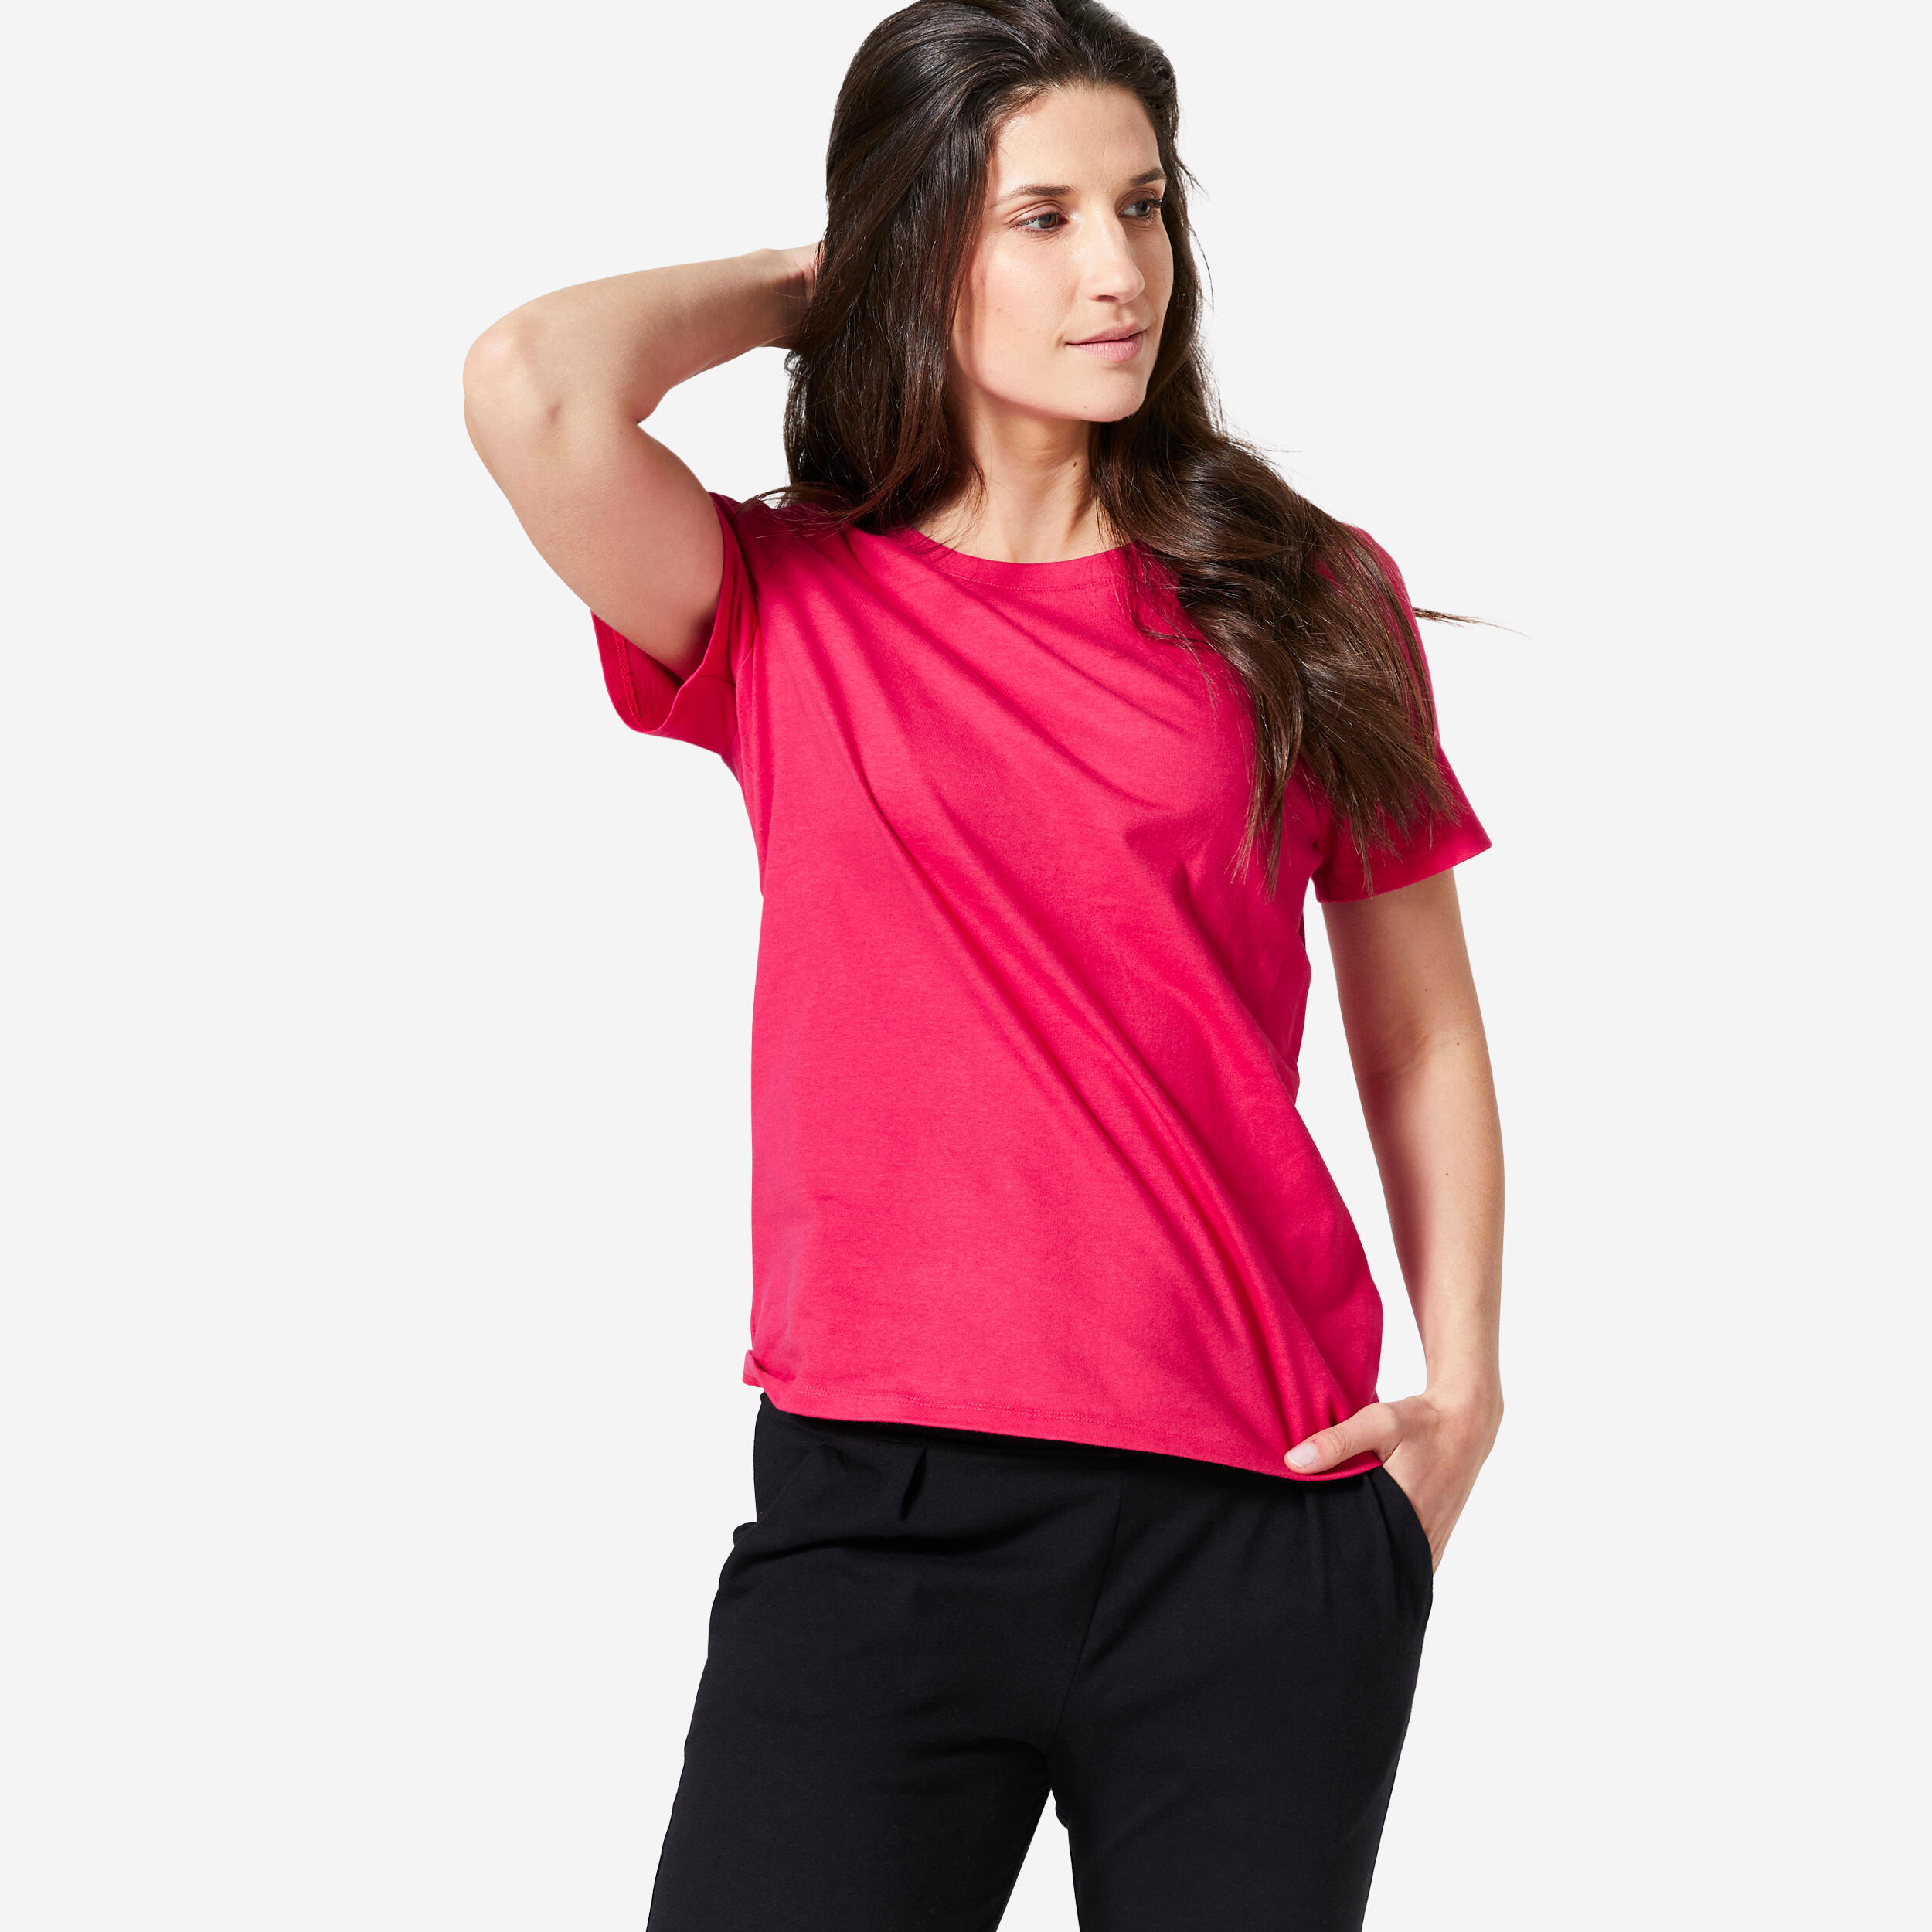 Women's Fitness T-Shirt 500 Essentials - Raspberry Pink 1/4